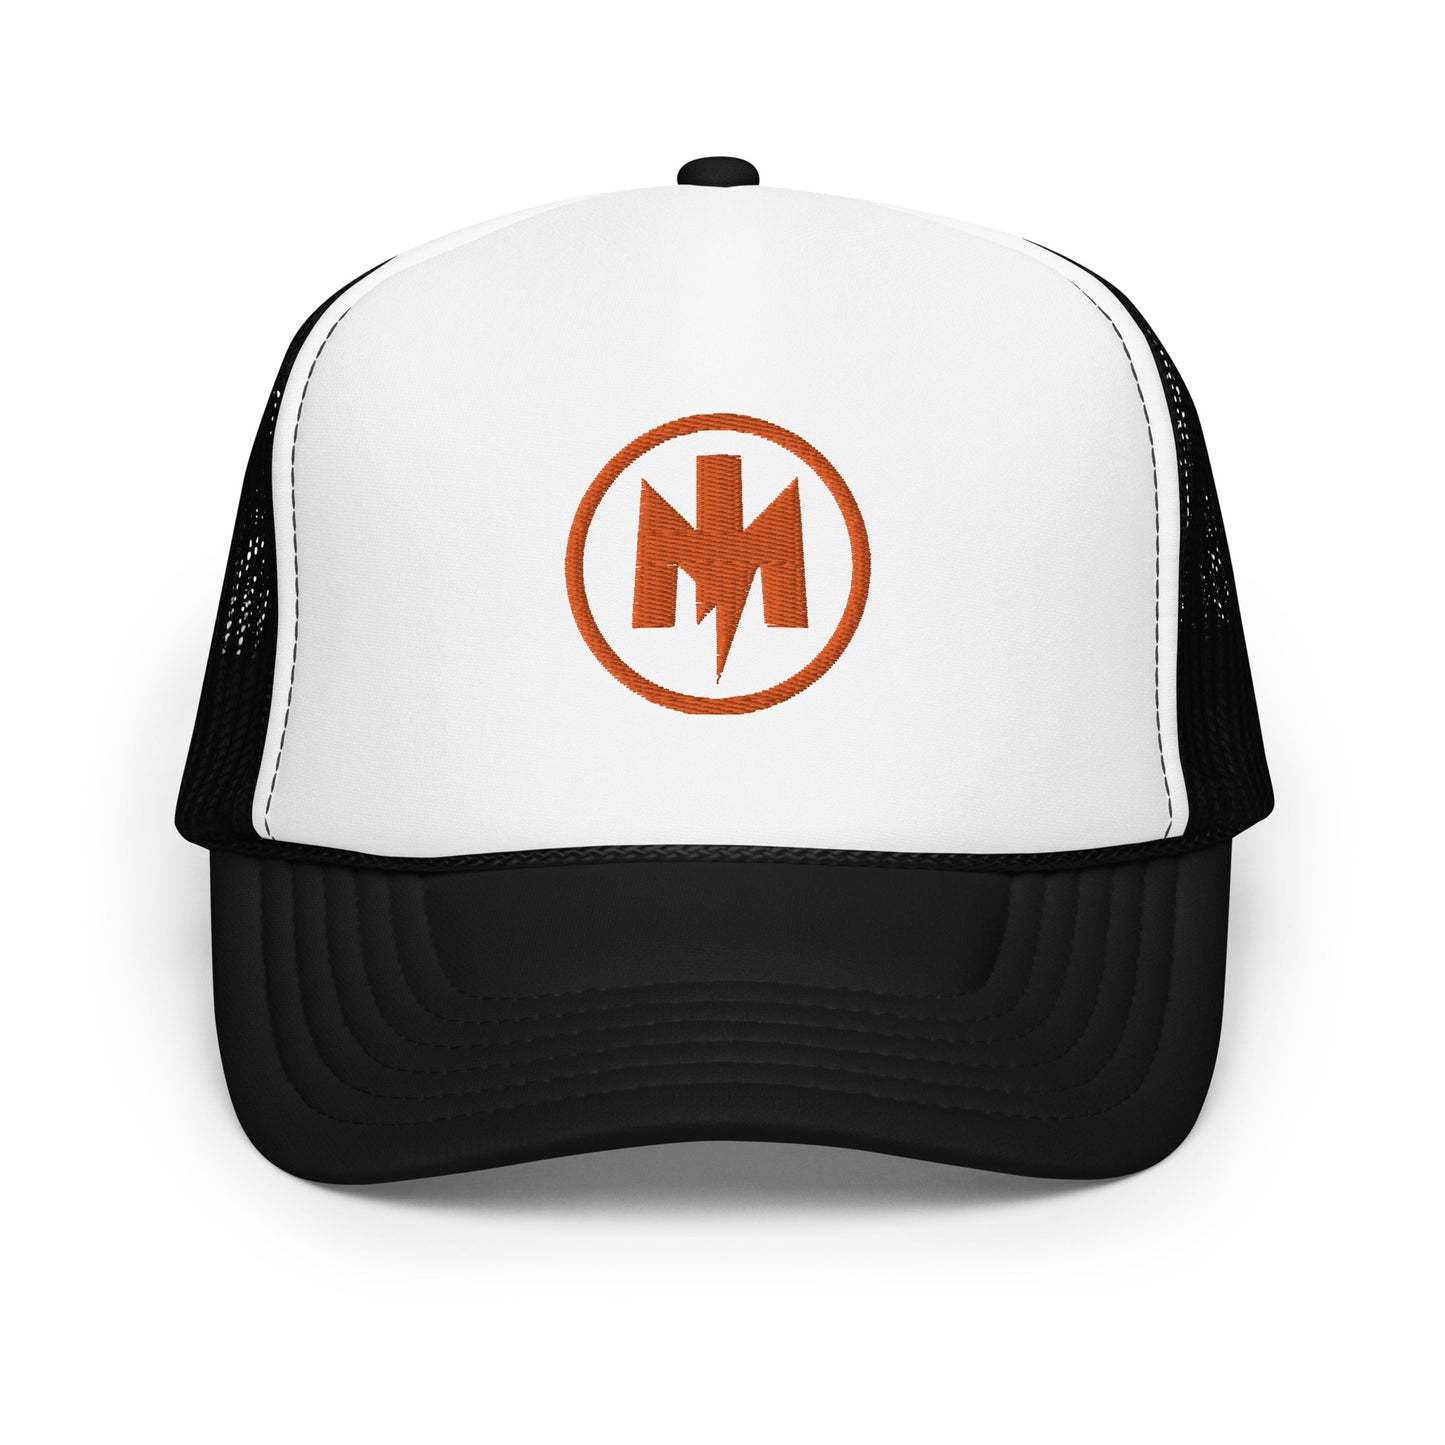 MotoIconic M logo foam trucker hat